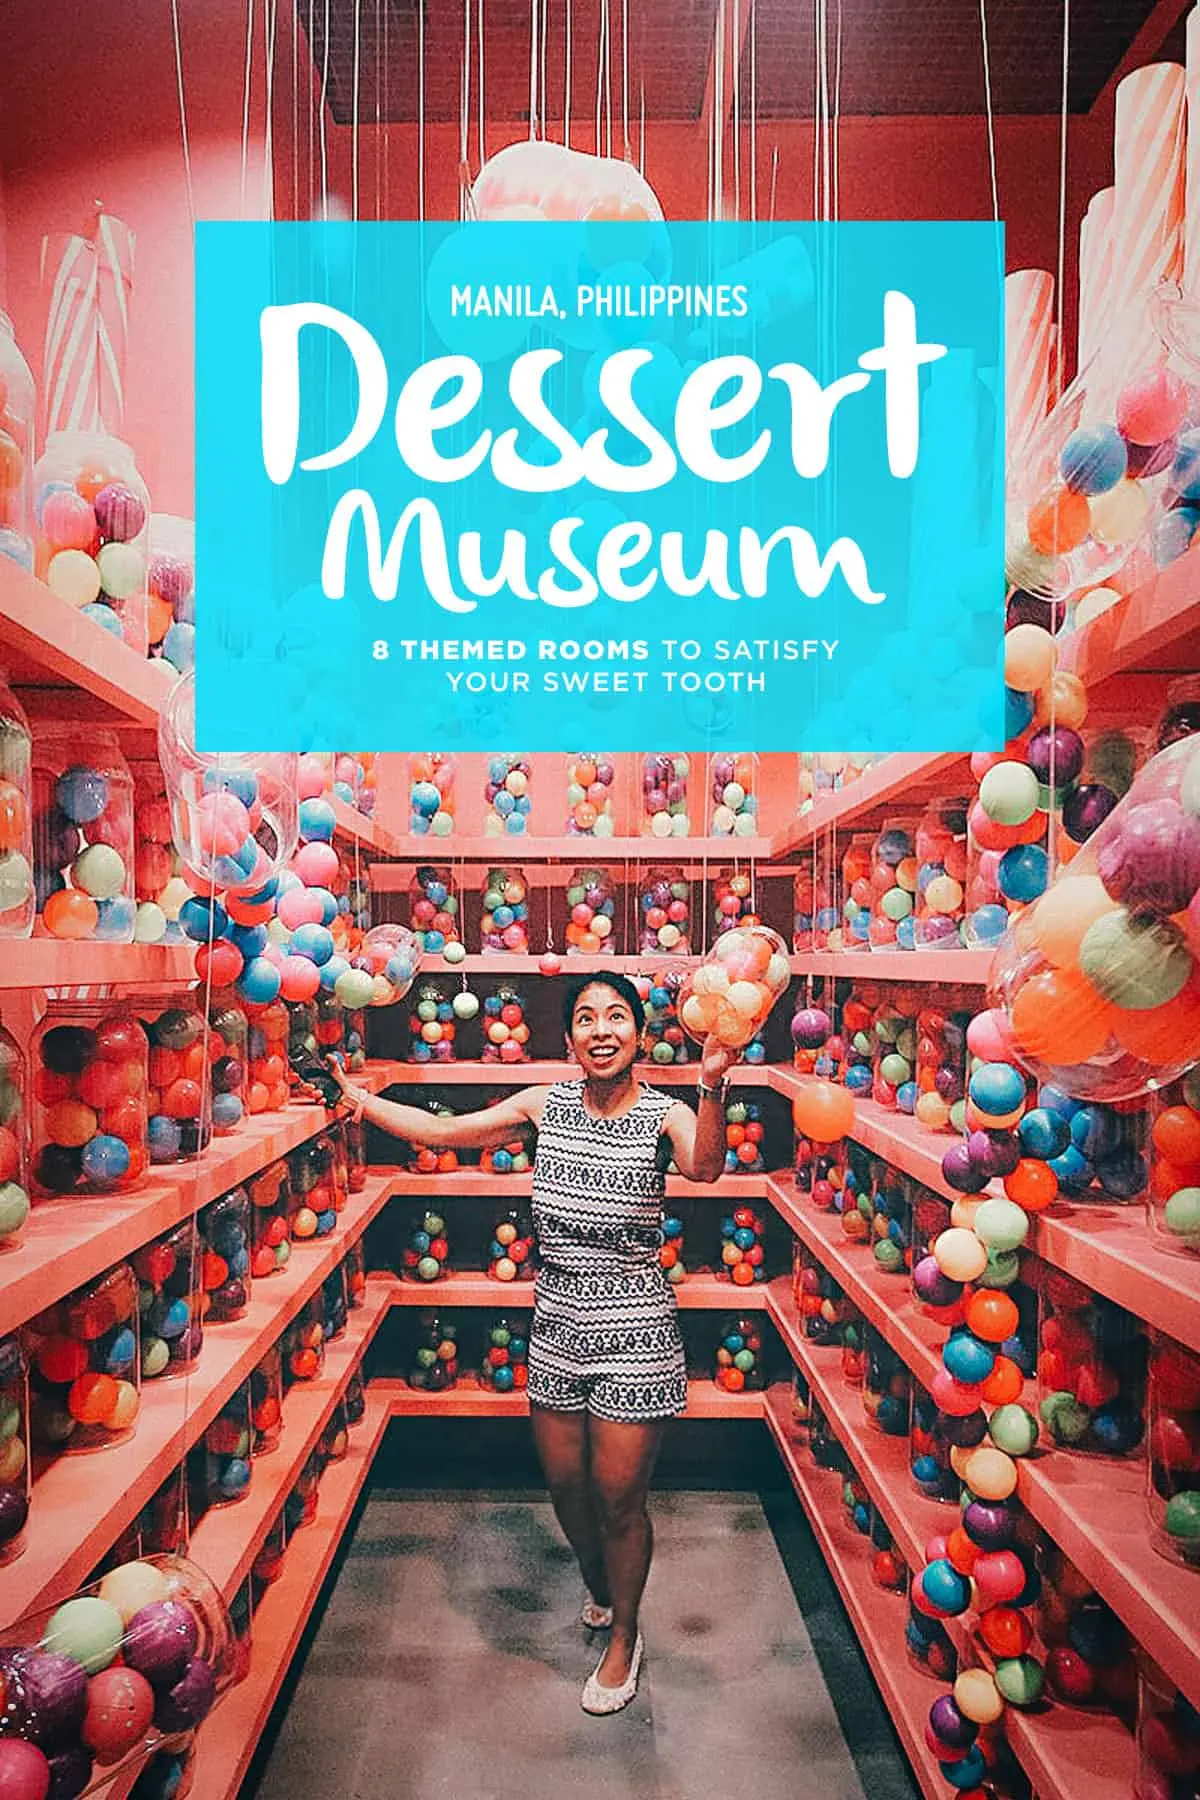 Dessert Museum, Manila, Philippines